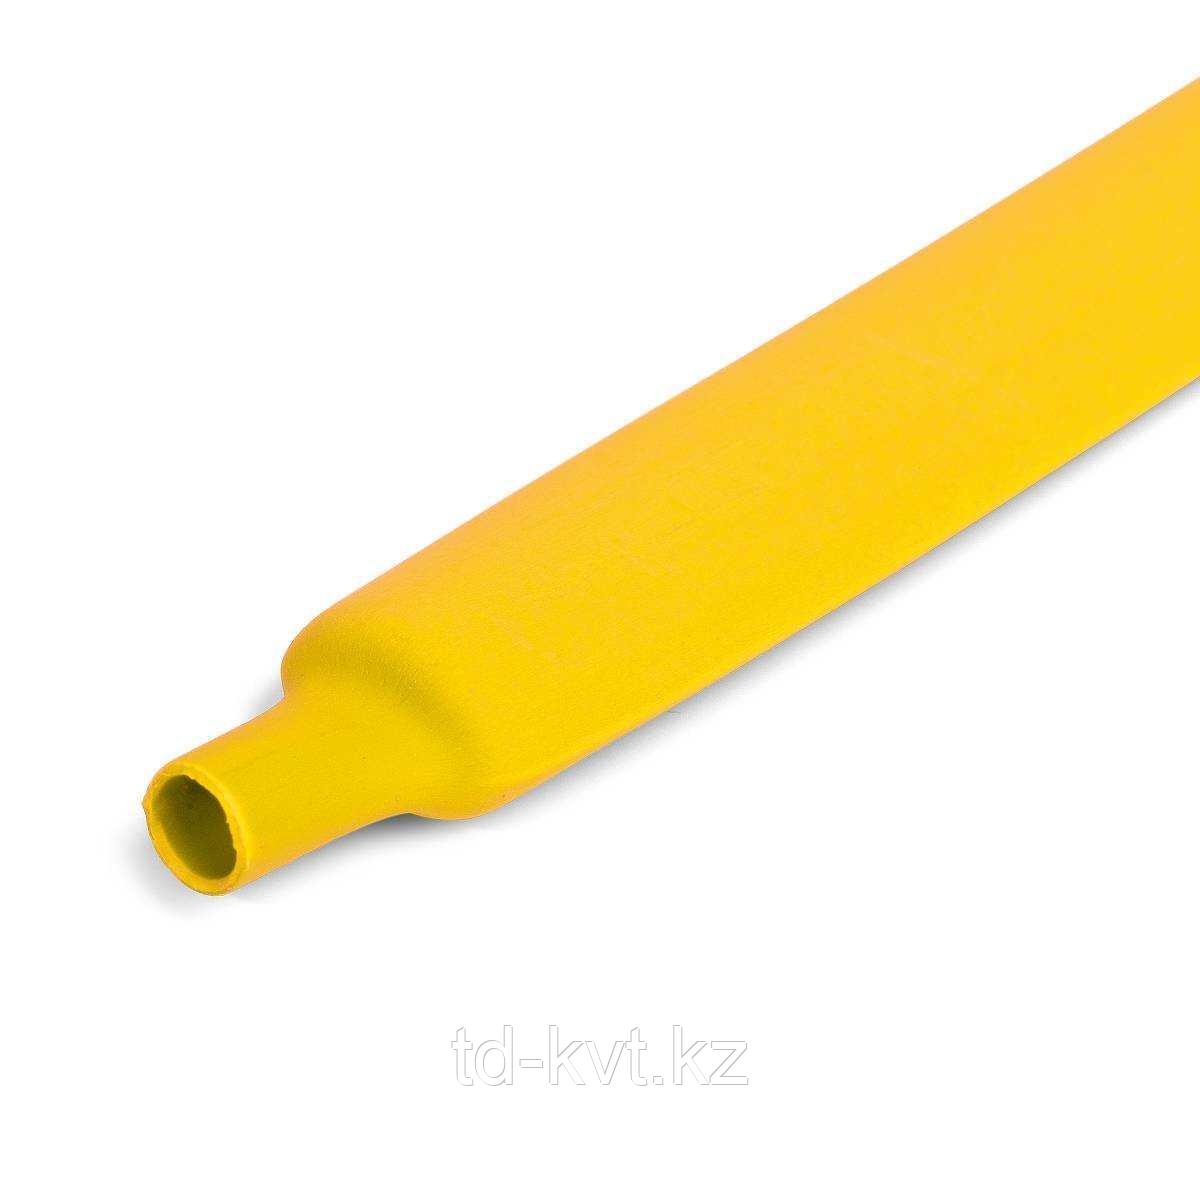 Цветная термоусадочная трубка с коэффициентом усадки 2:1 ТУТ (HF)-12/6, желт